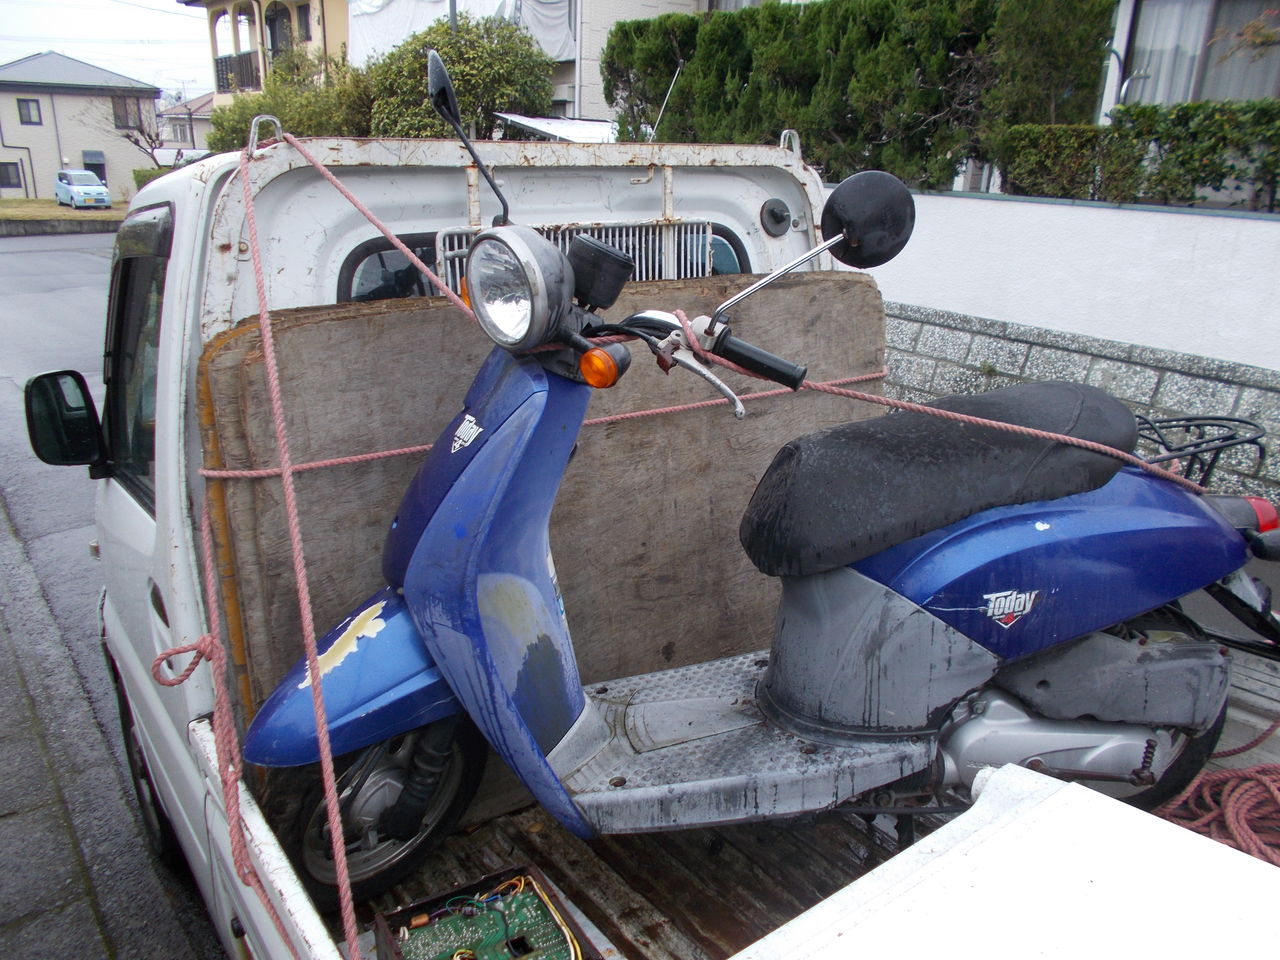 電化製品 家電品処分無料回収 鹿児島でバイク処分 エアコン パソコン 液晶テレビの無料回収やってます 家電品無料回収 ハローネット